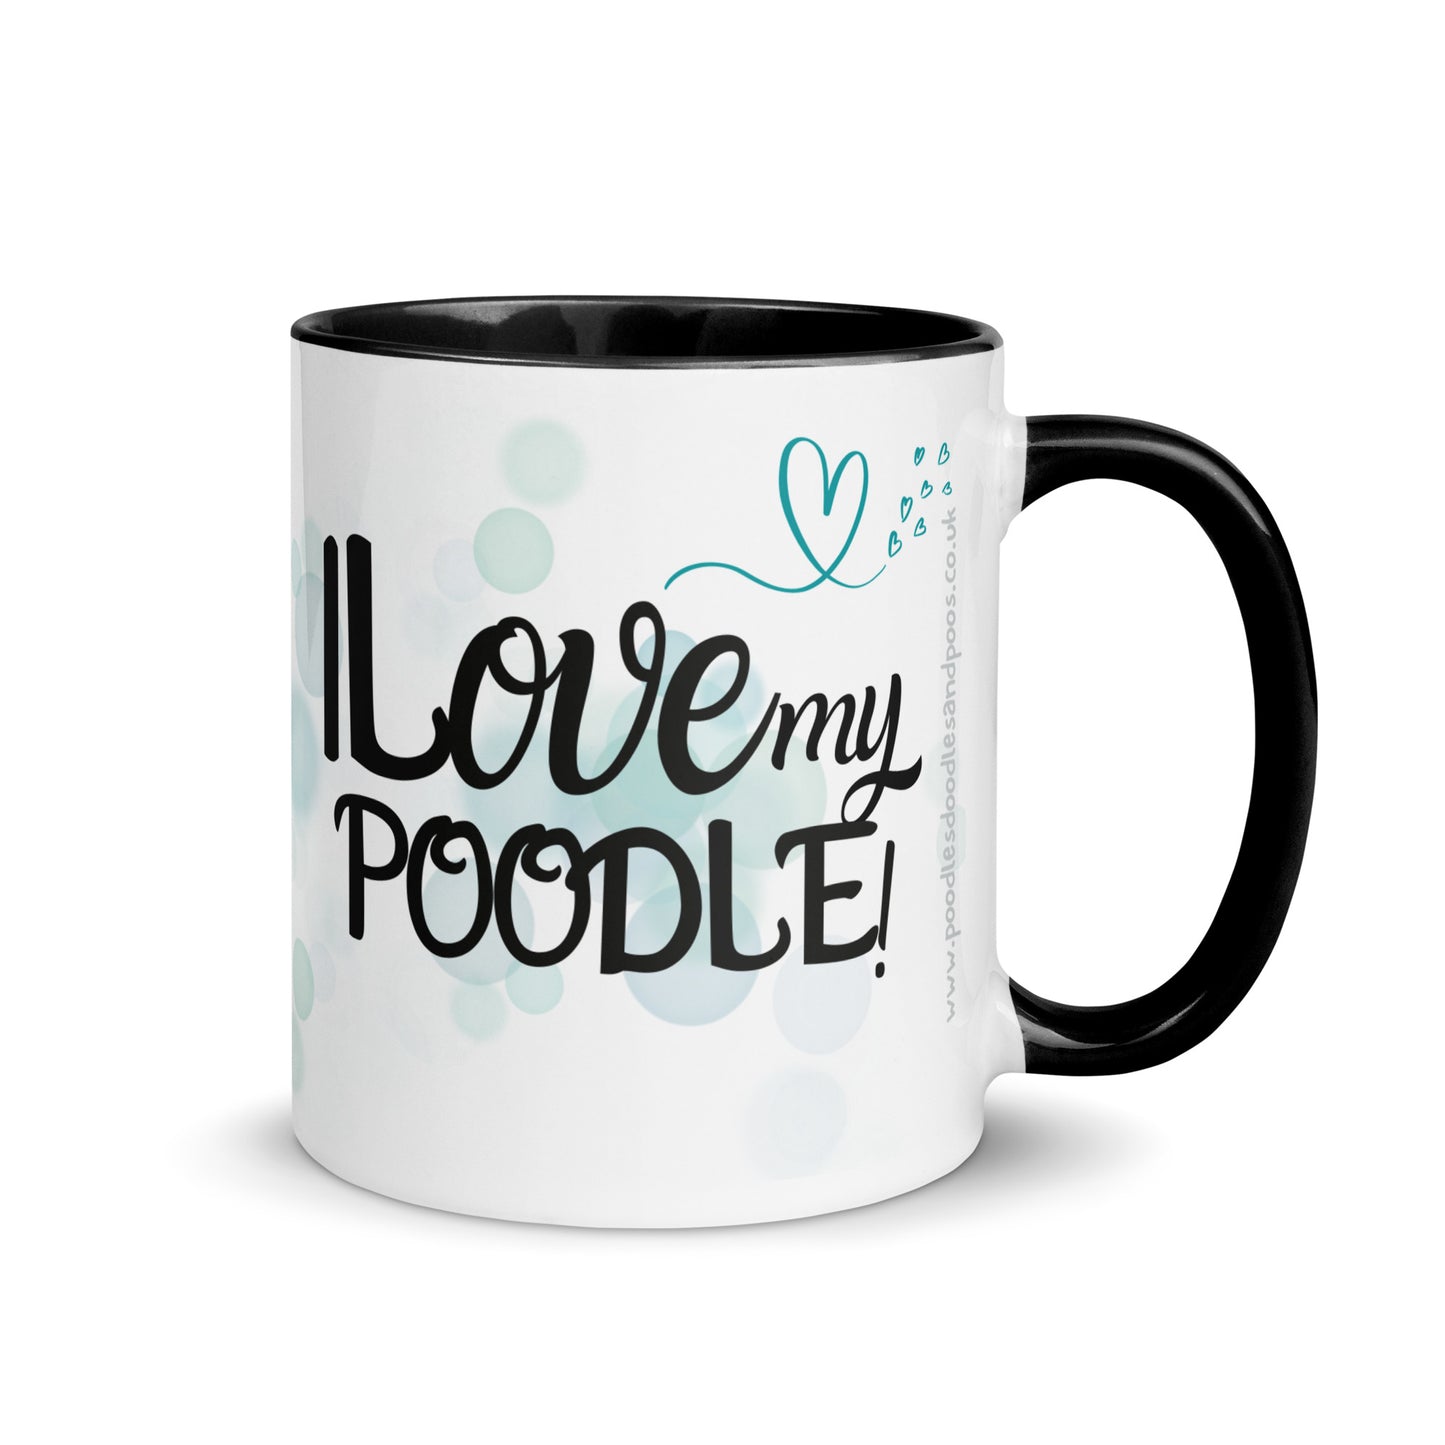 "I Love my..." mug with black inside - golden Poodle